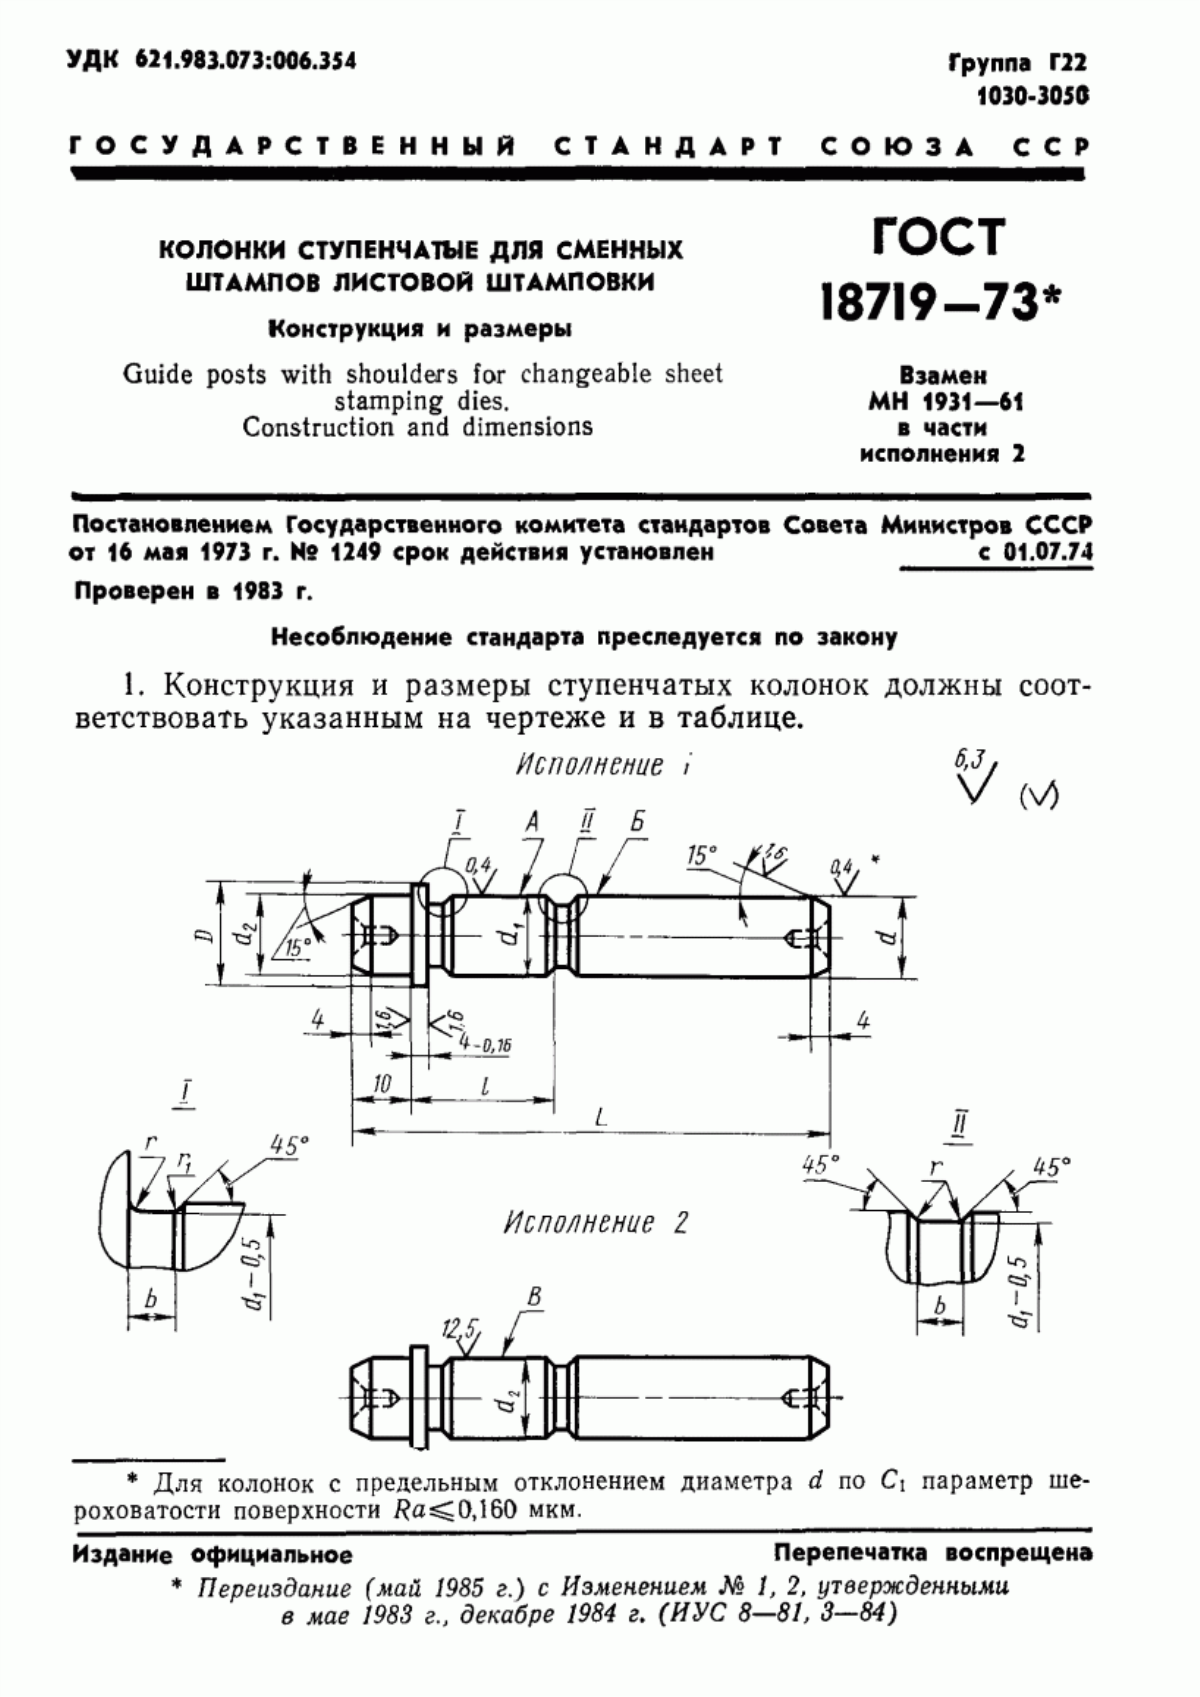 ГОСТ 18719-73 Колонки ступенчатые для сменных штампов листовой штамповки. Конструкция и размеры